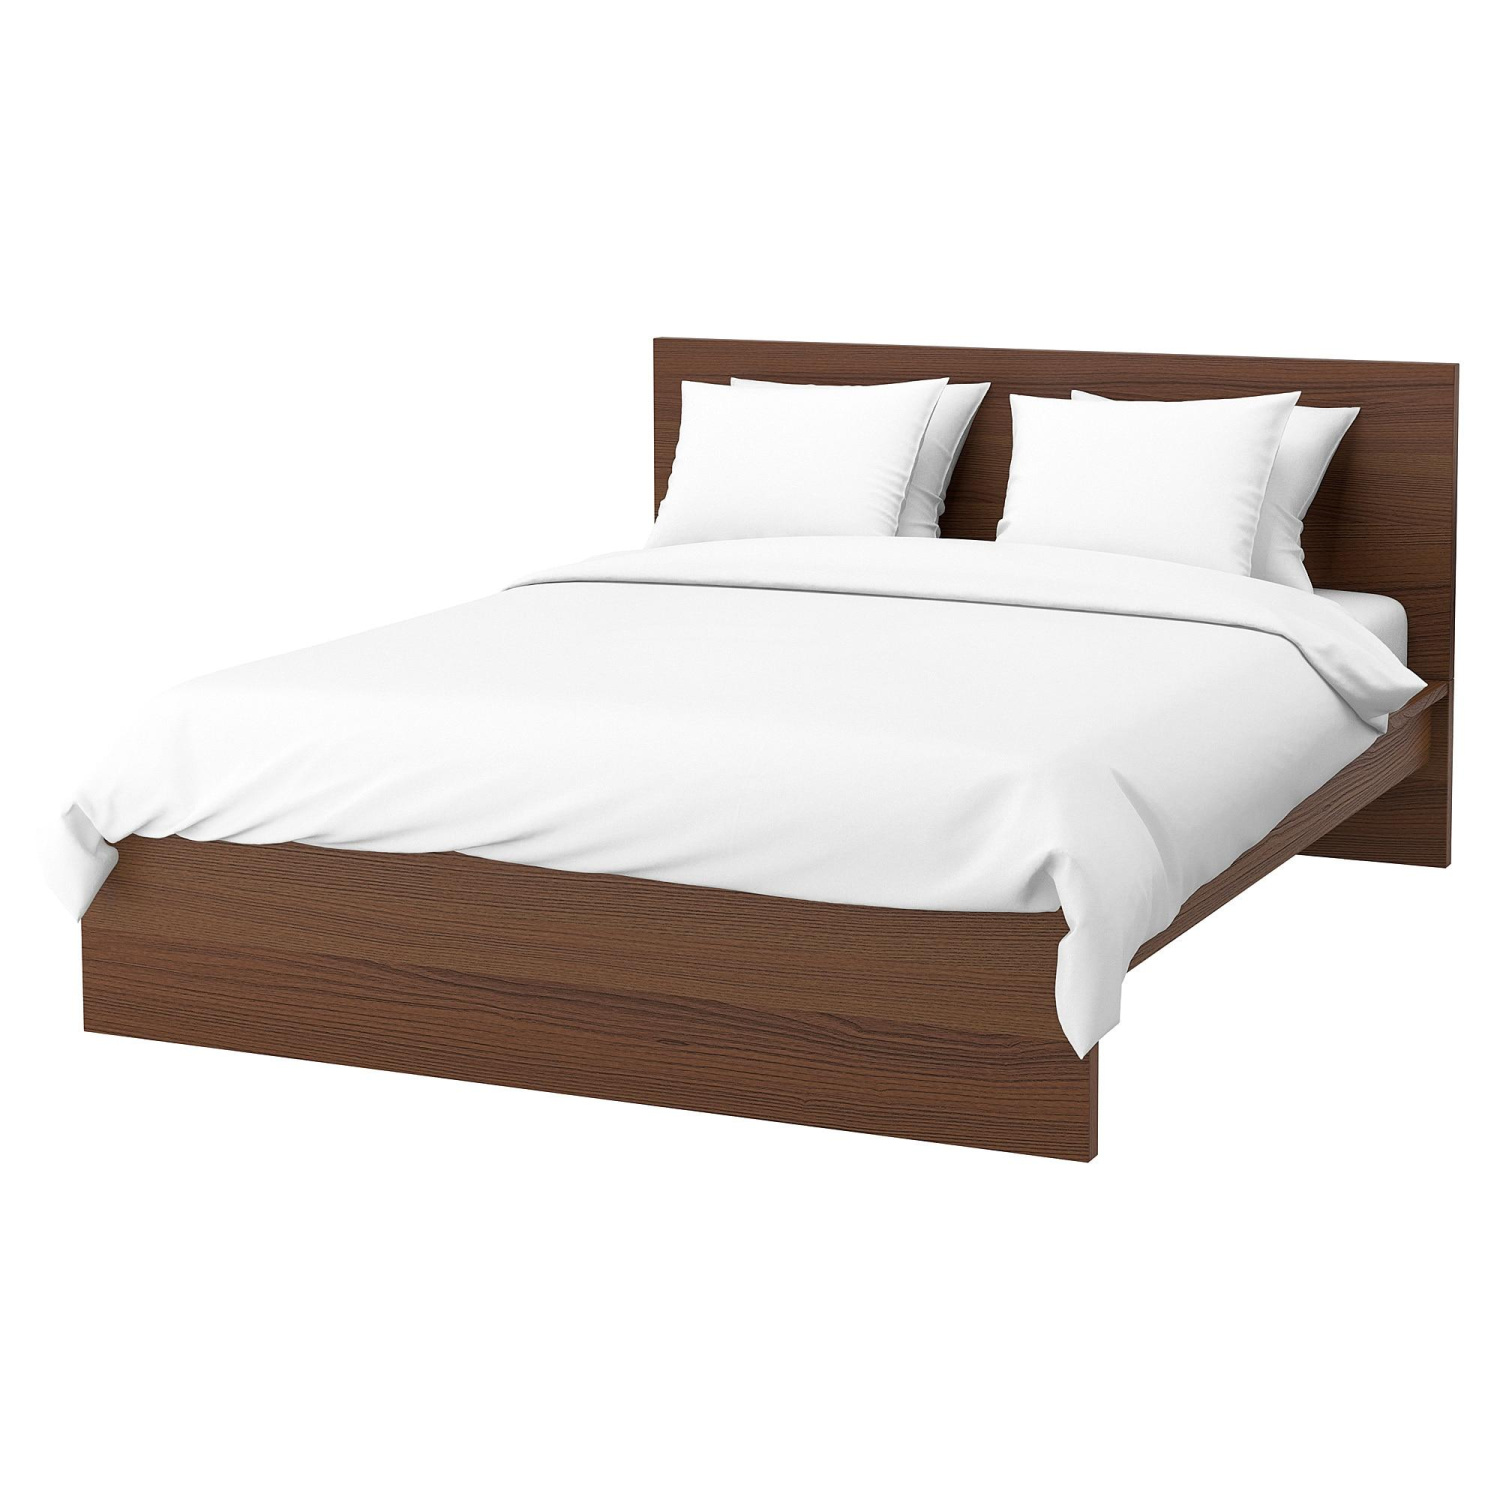 Двоспальне ліжко Мальм коричневий ІКЕА (IKEA)